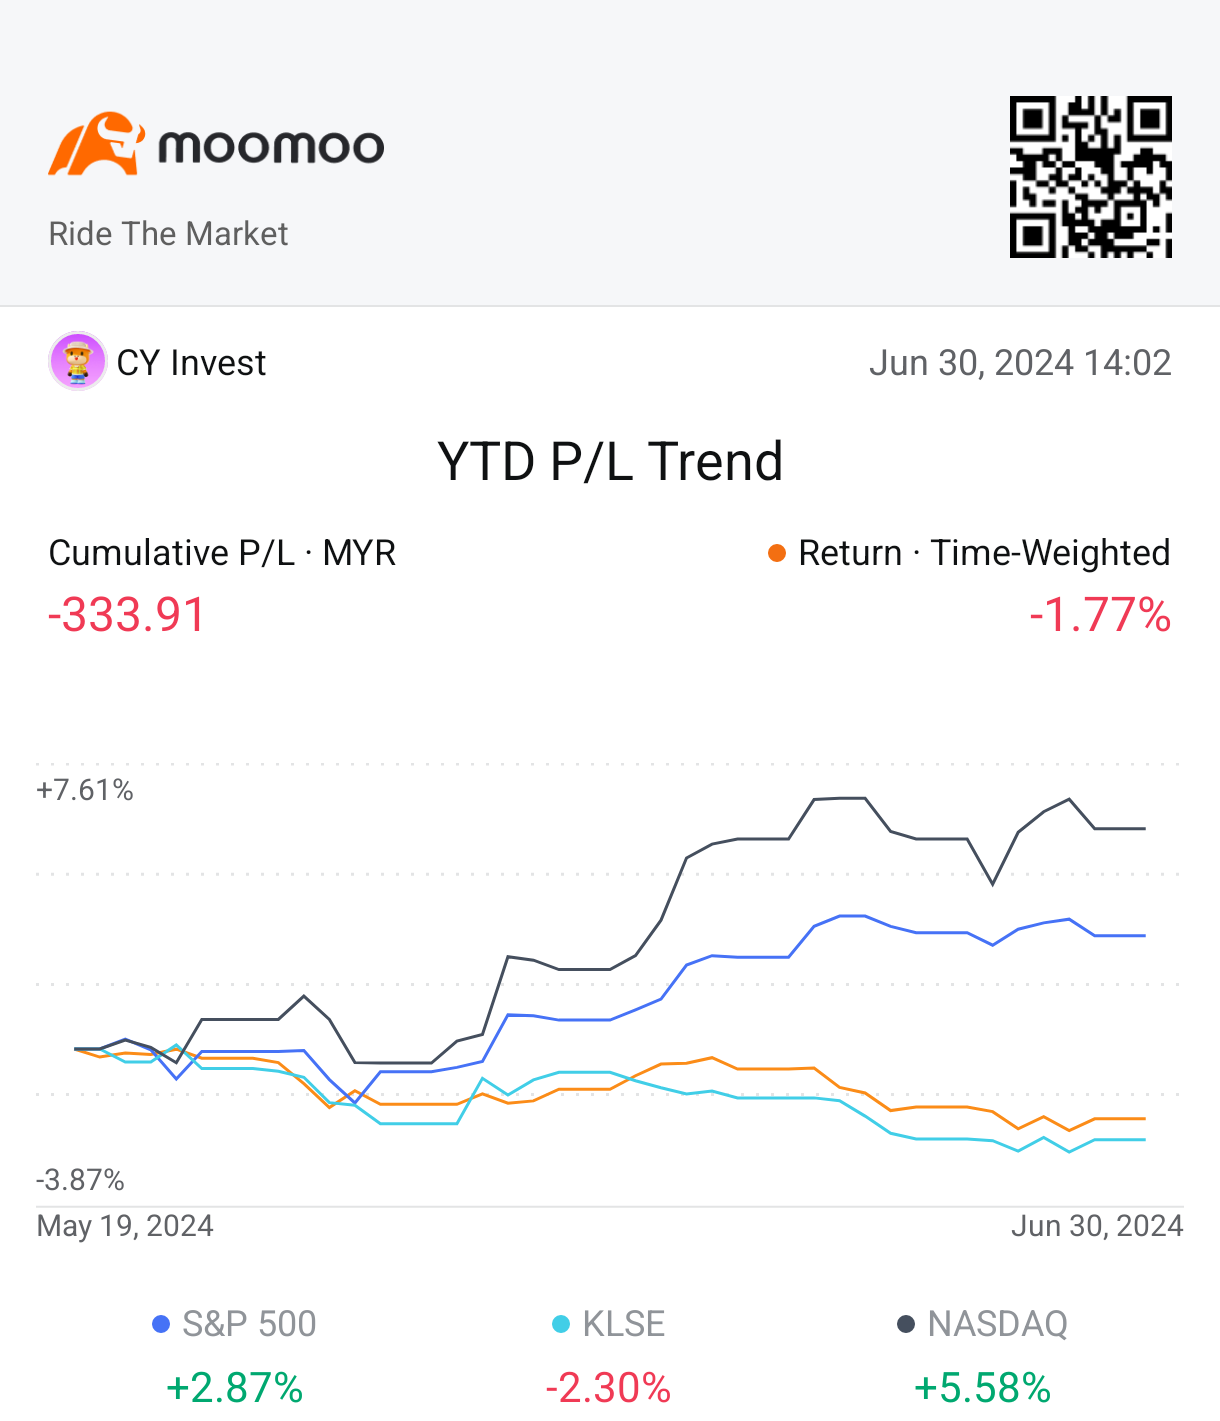 只开始使用moomoo 1.5个月，仍在学习如何投资。